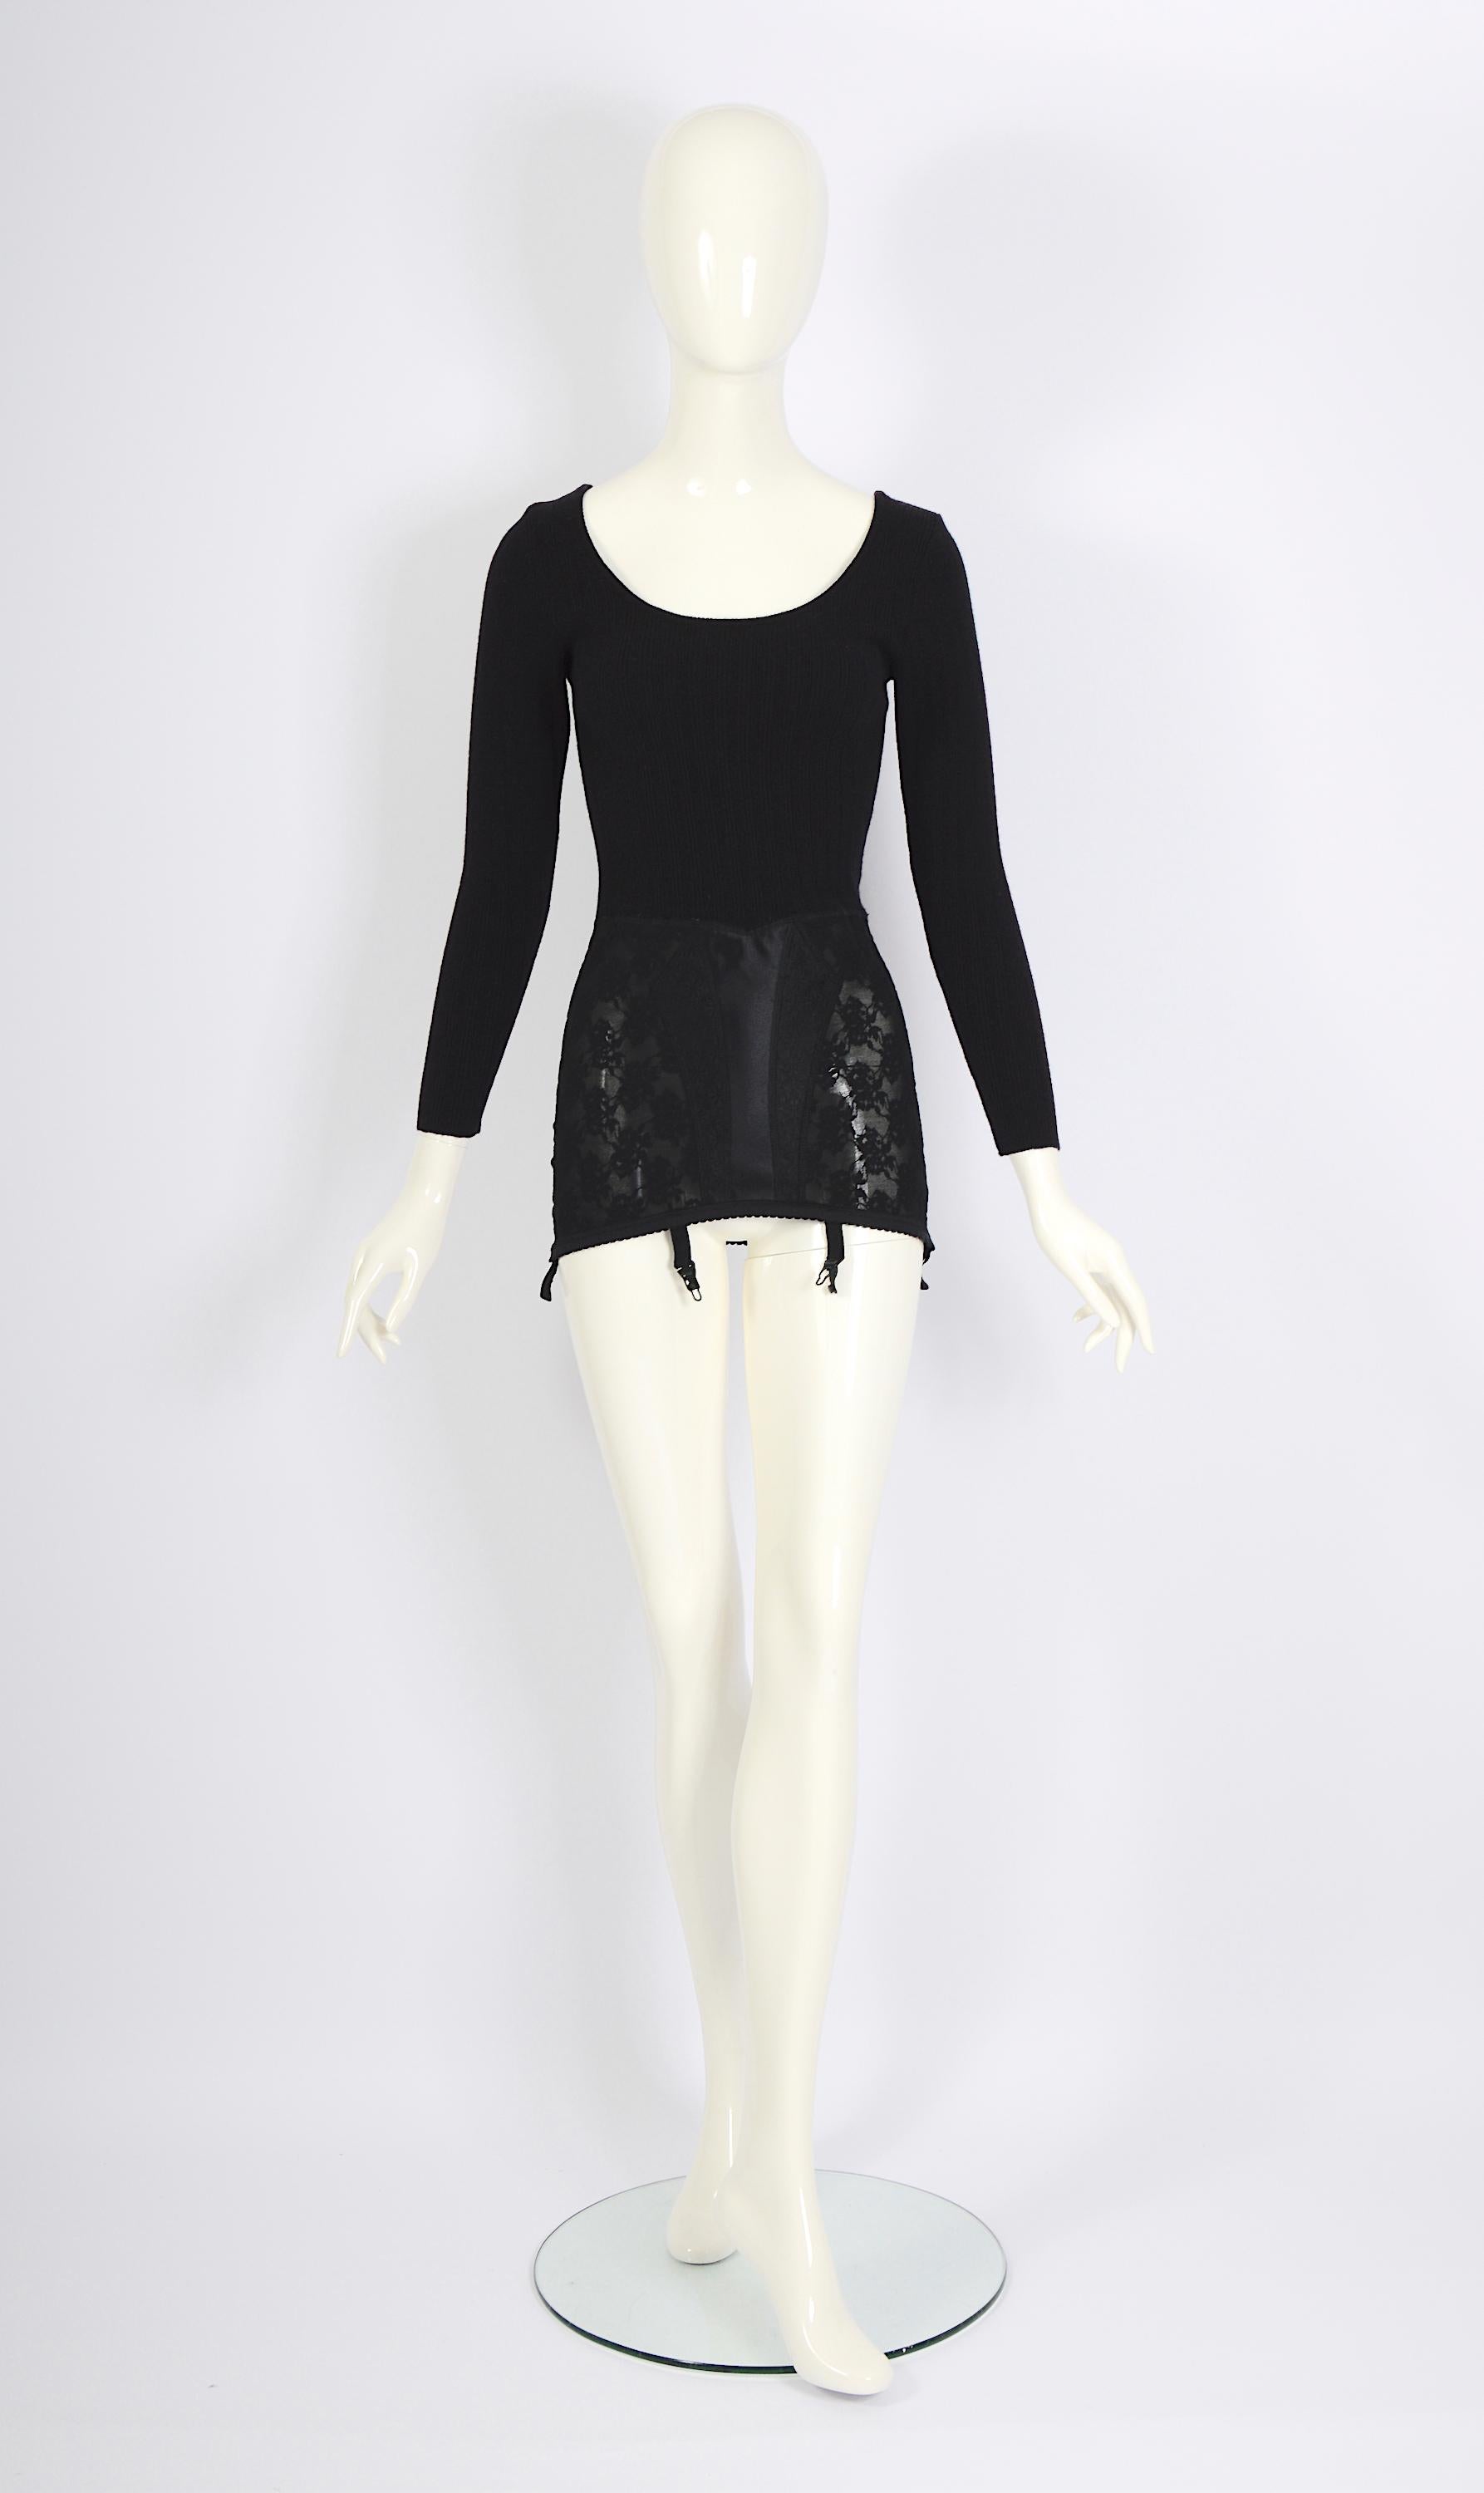 Gorgeous collectors archival vintage des années 1980 Moschino by Franco Moschino micro mini robe ou top, mettant en vedette un haut laineux avec un corset attaché. Il suffit d'enfiler des collants noirs et des talons élégants pour compléter le look.